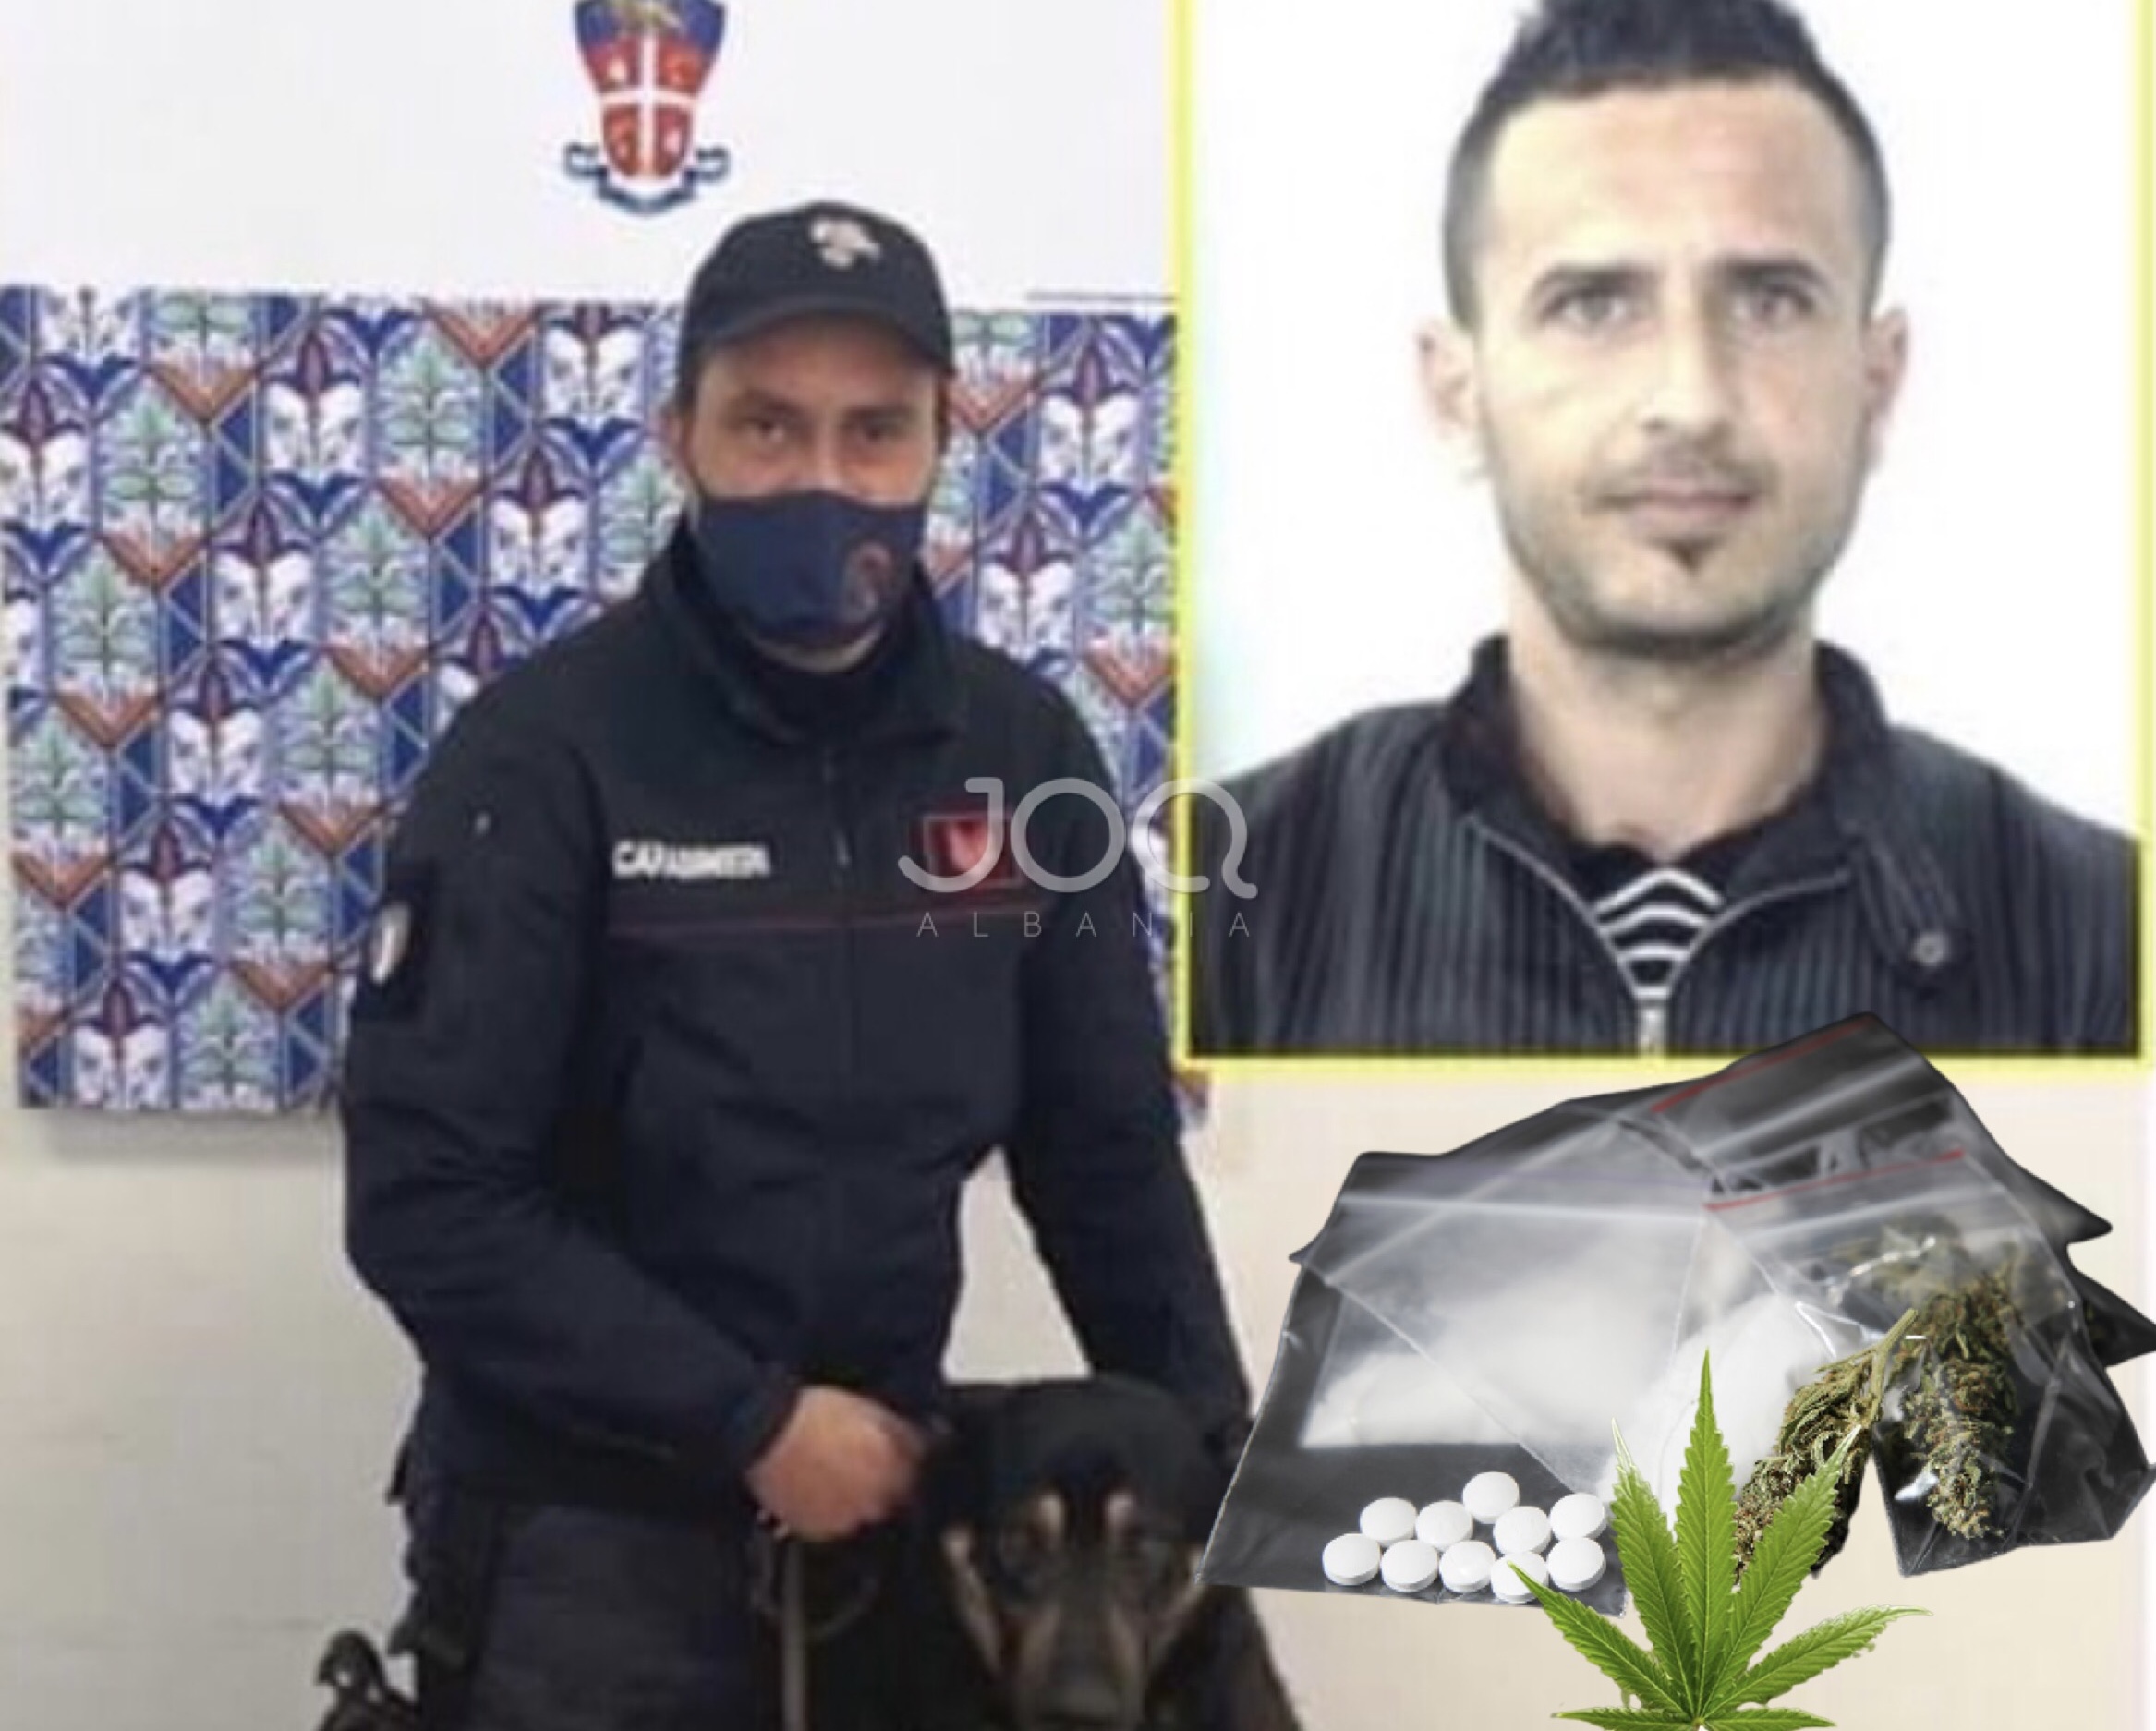 Kishte kthyer shtëpinë në ‘dyqan kokaine’, qentë anti-drogë zbulojnë shqiptarin në Itali